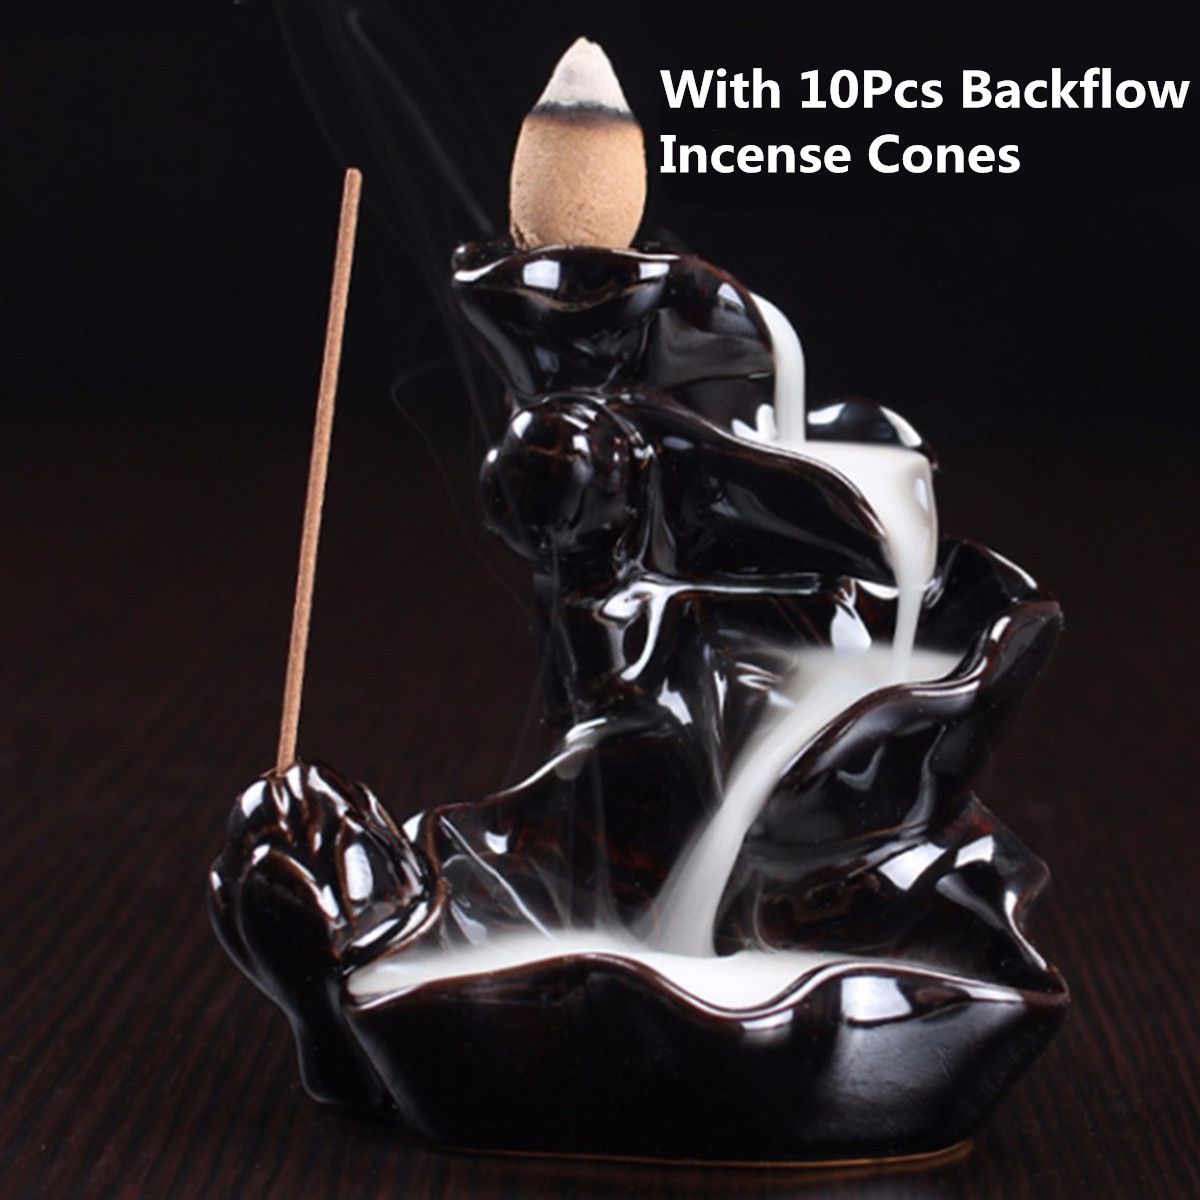 Backflow-Incense-Cone-Burner-Holder-Ceramic-Lotus-Stream-Fragrant-Smoke-Backflow-Home-Censer-Decor-1304947